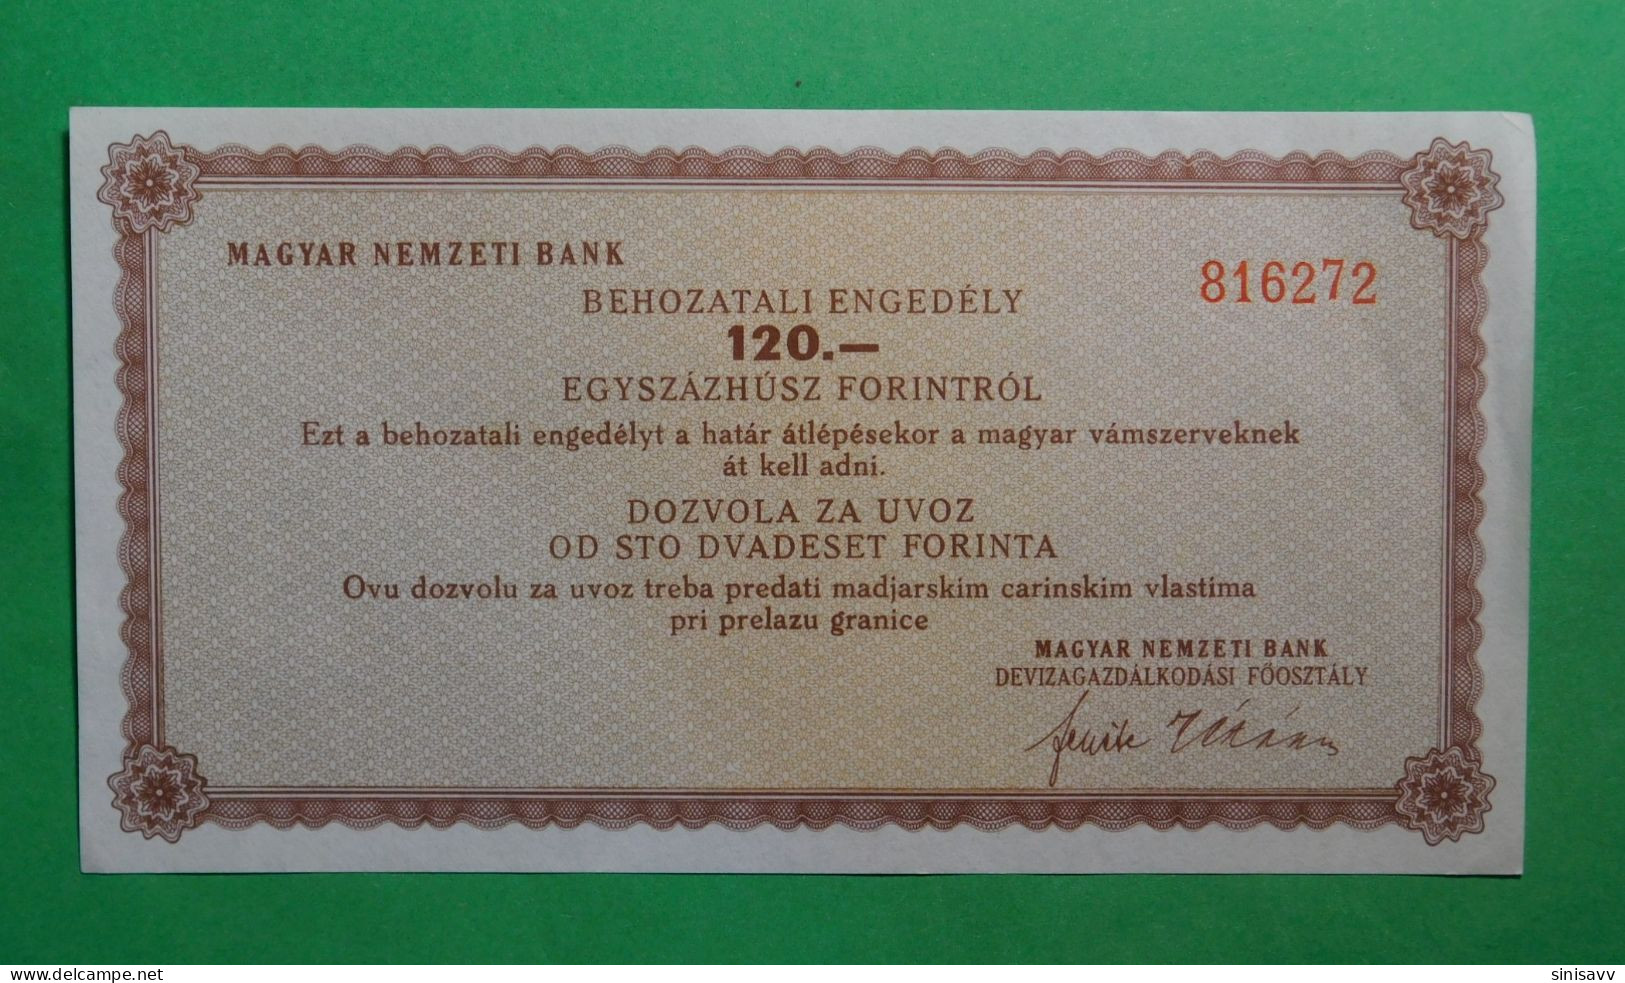 Magyar Nemzeti Bank - Behozatali Engedely 120 Forintrol - Dozvola Za Uvoz Od 120 Forinta - Ungarn